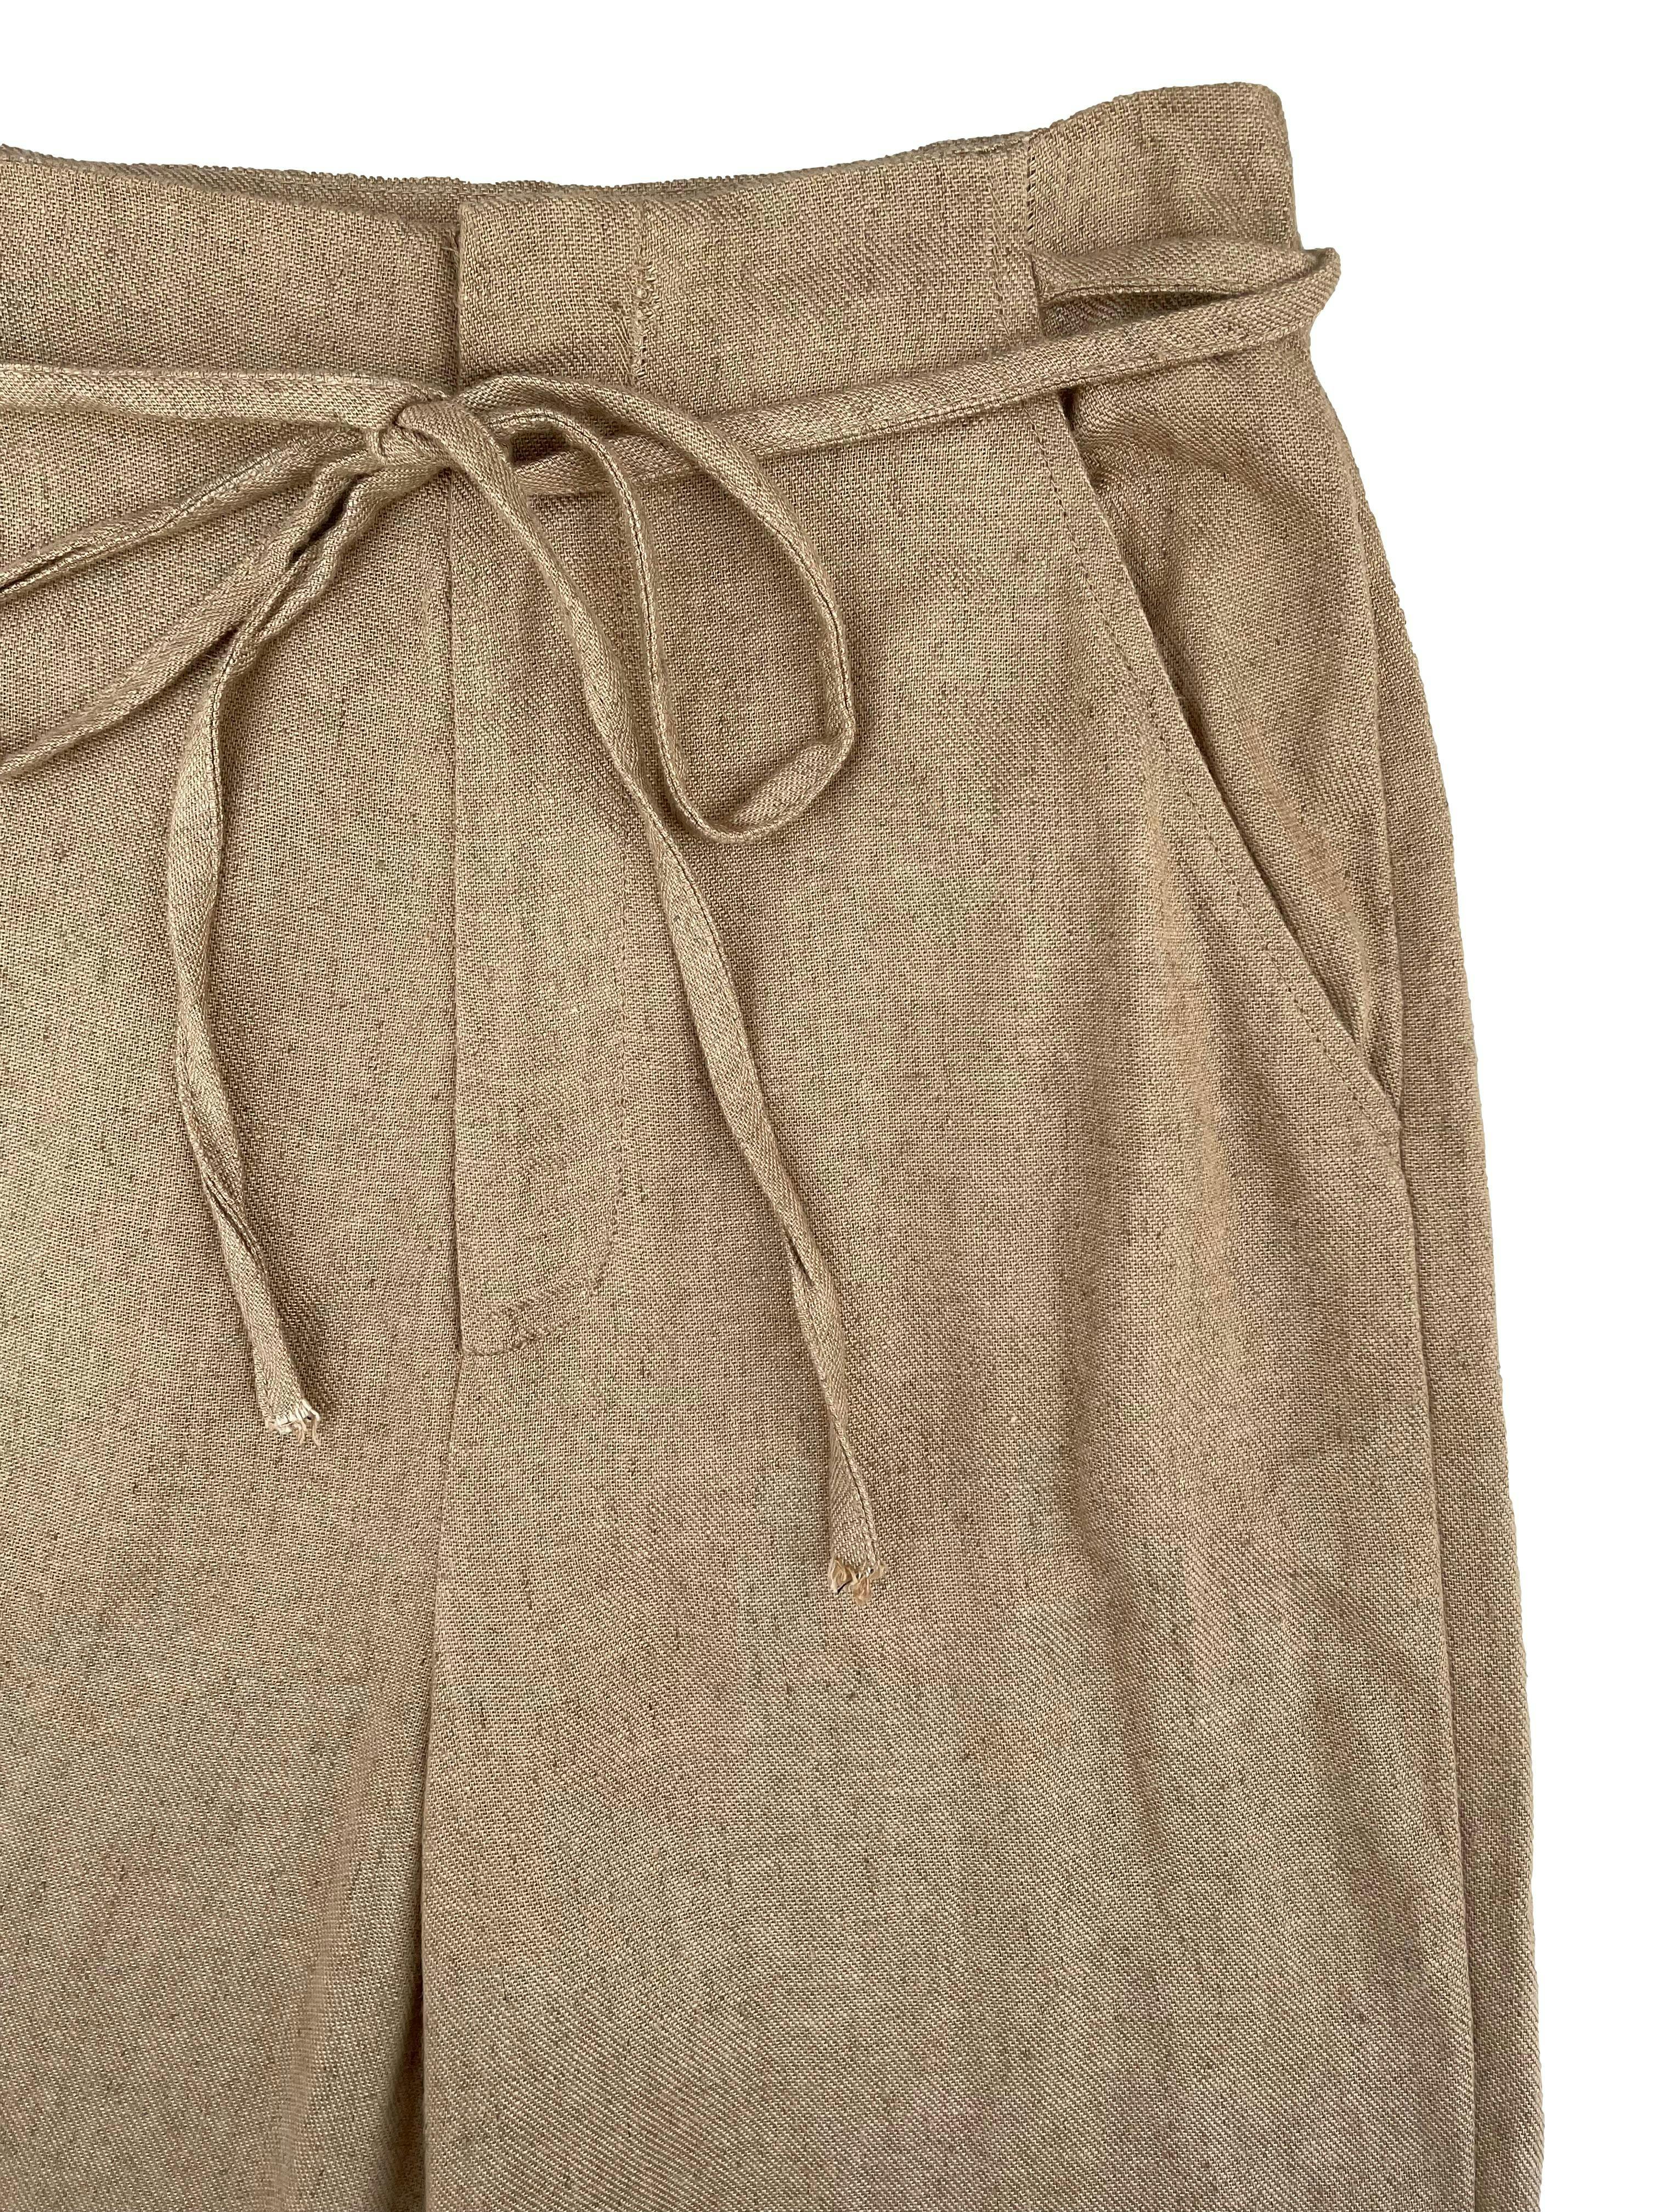 Pantalón palazzo Stradivarius color camel, tela ligera en mezcla de lino y algodón, tiro alto con cintos en cintura y bolsillos frontales. Cintura 65cm, Largo 112cm.